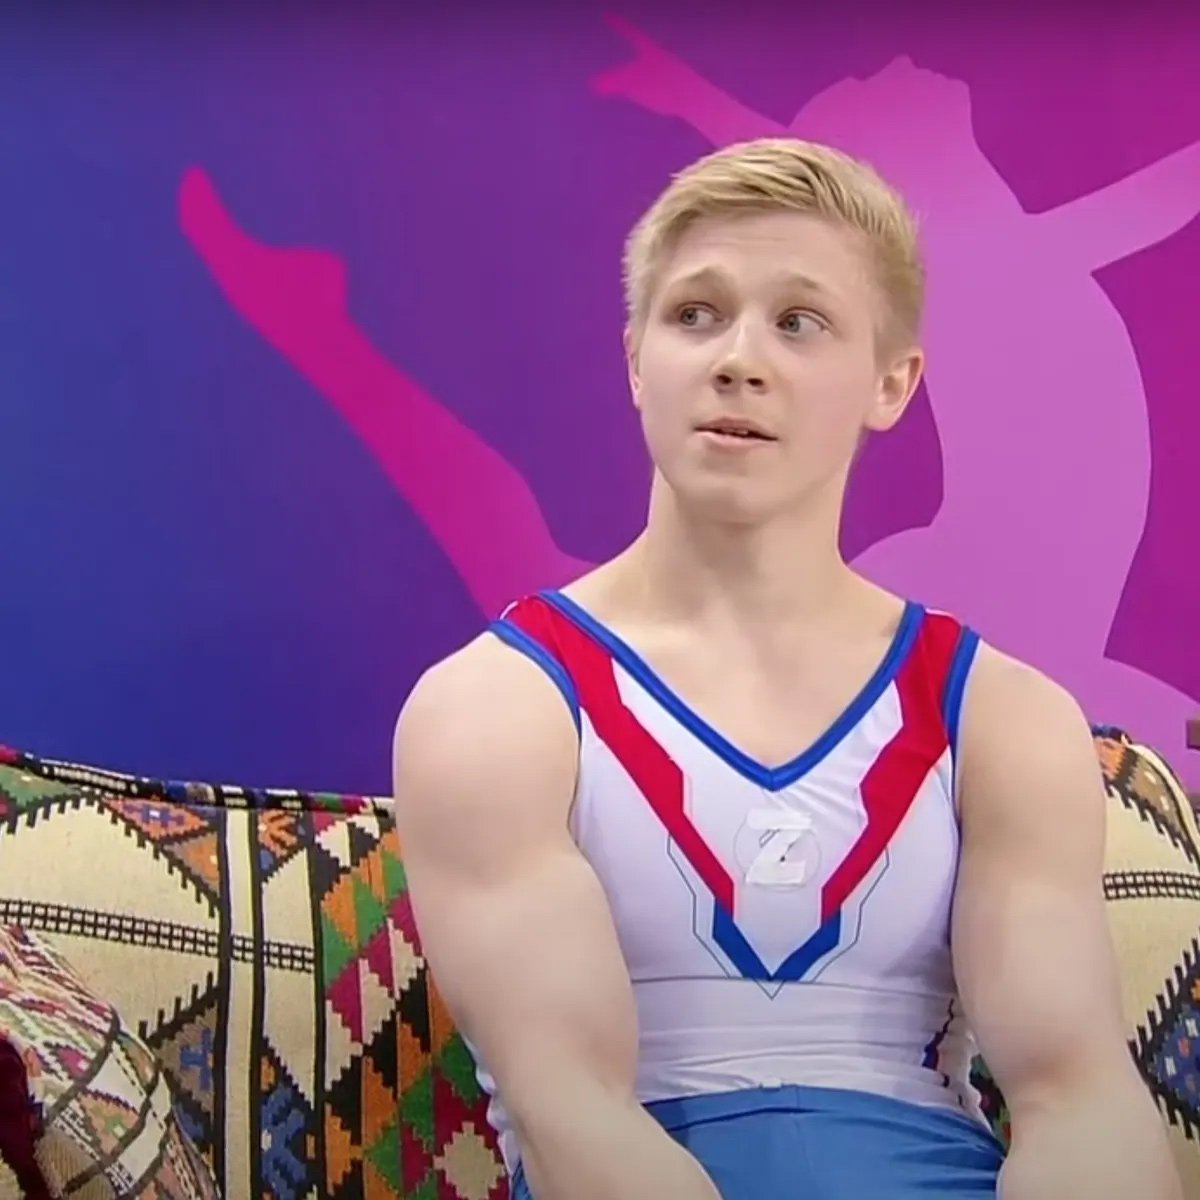 Le gymnaste russe qui a porté le symbole « Z » est banni pendant un an et doit rendre sa médaille